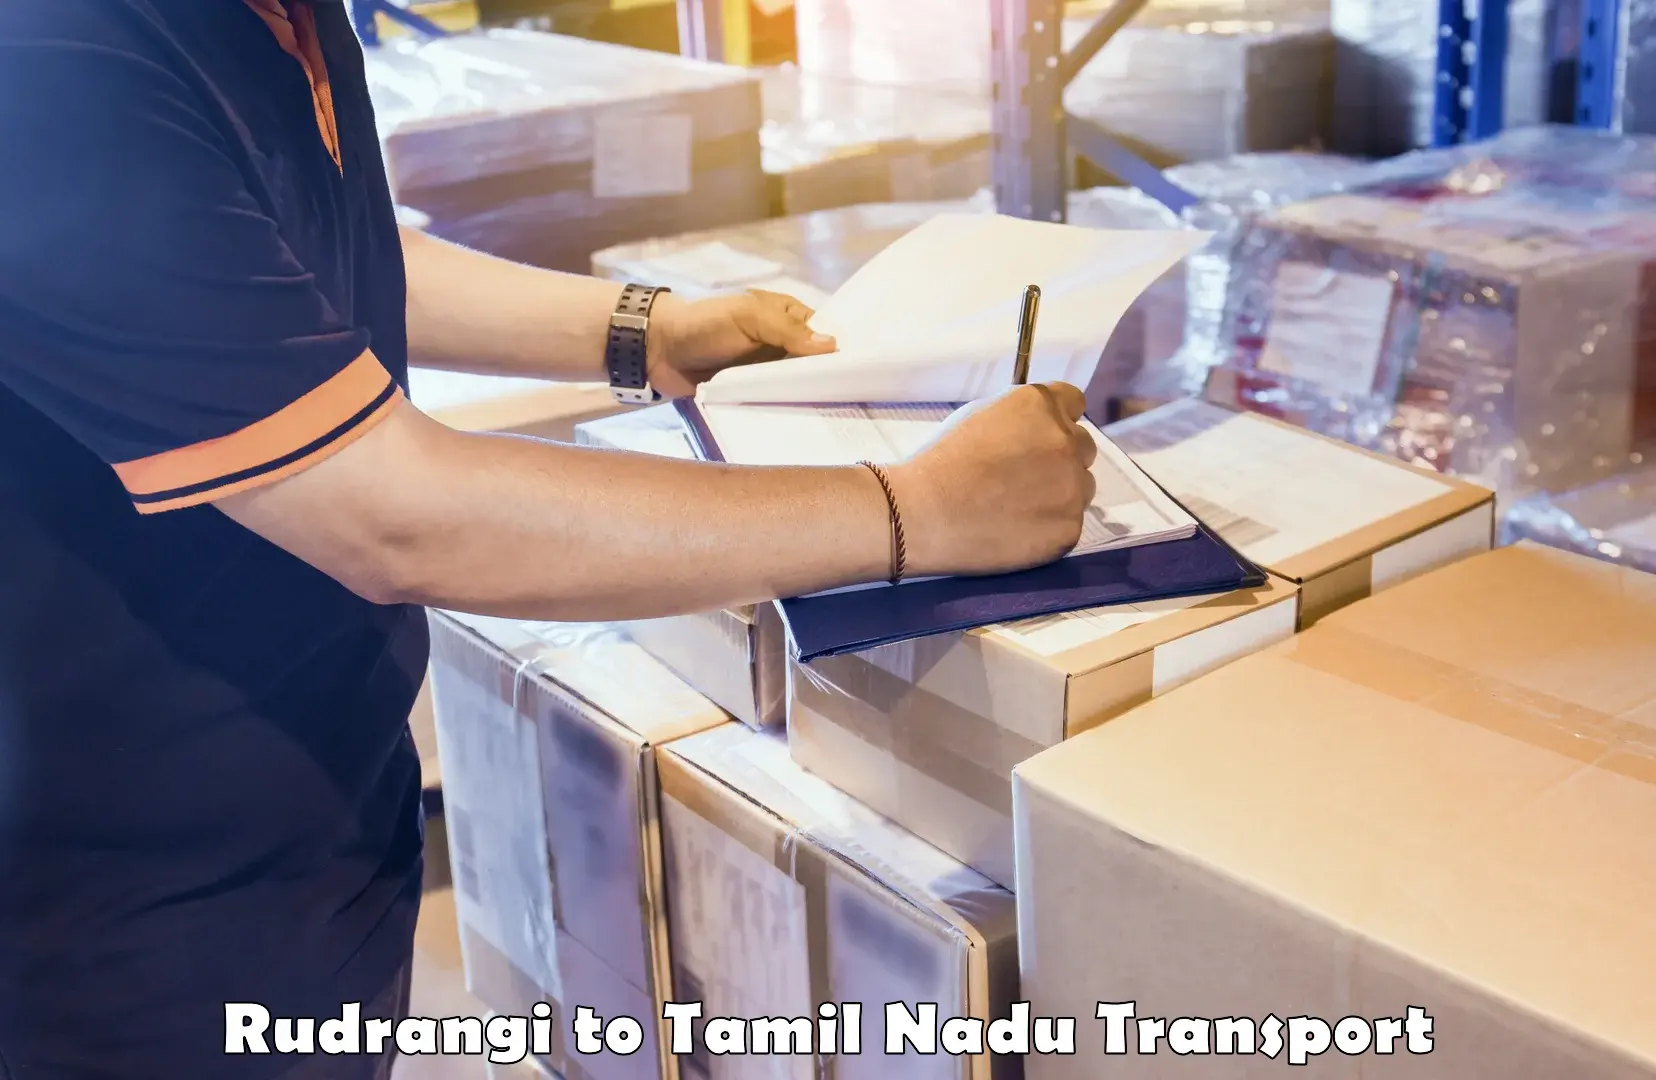 Lorry transport service Rudrangi to Tiruvarur